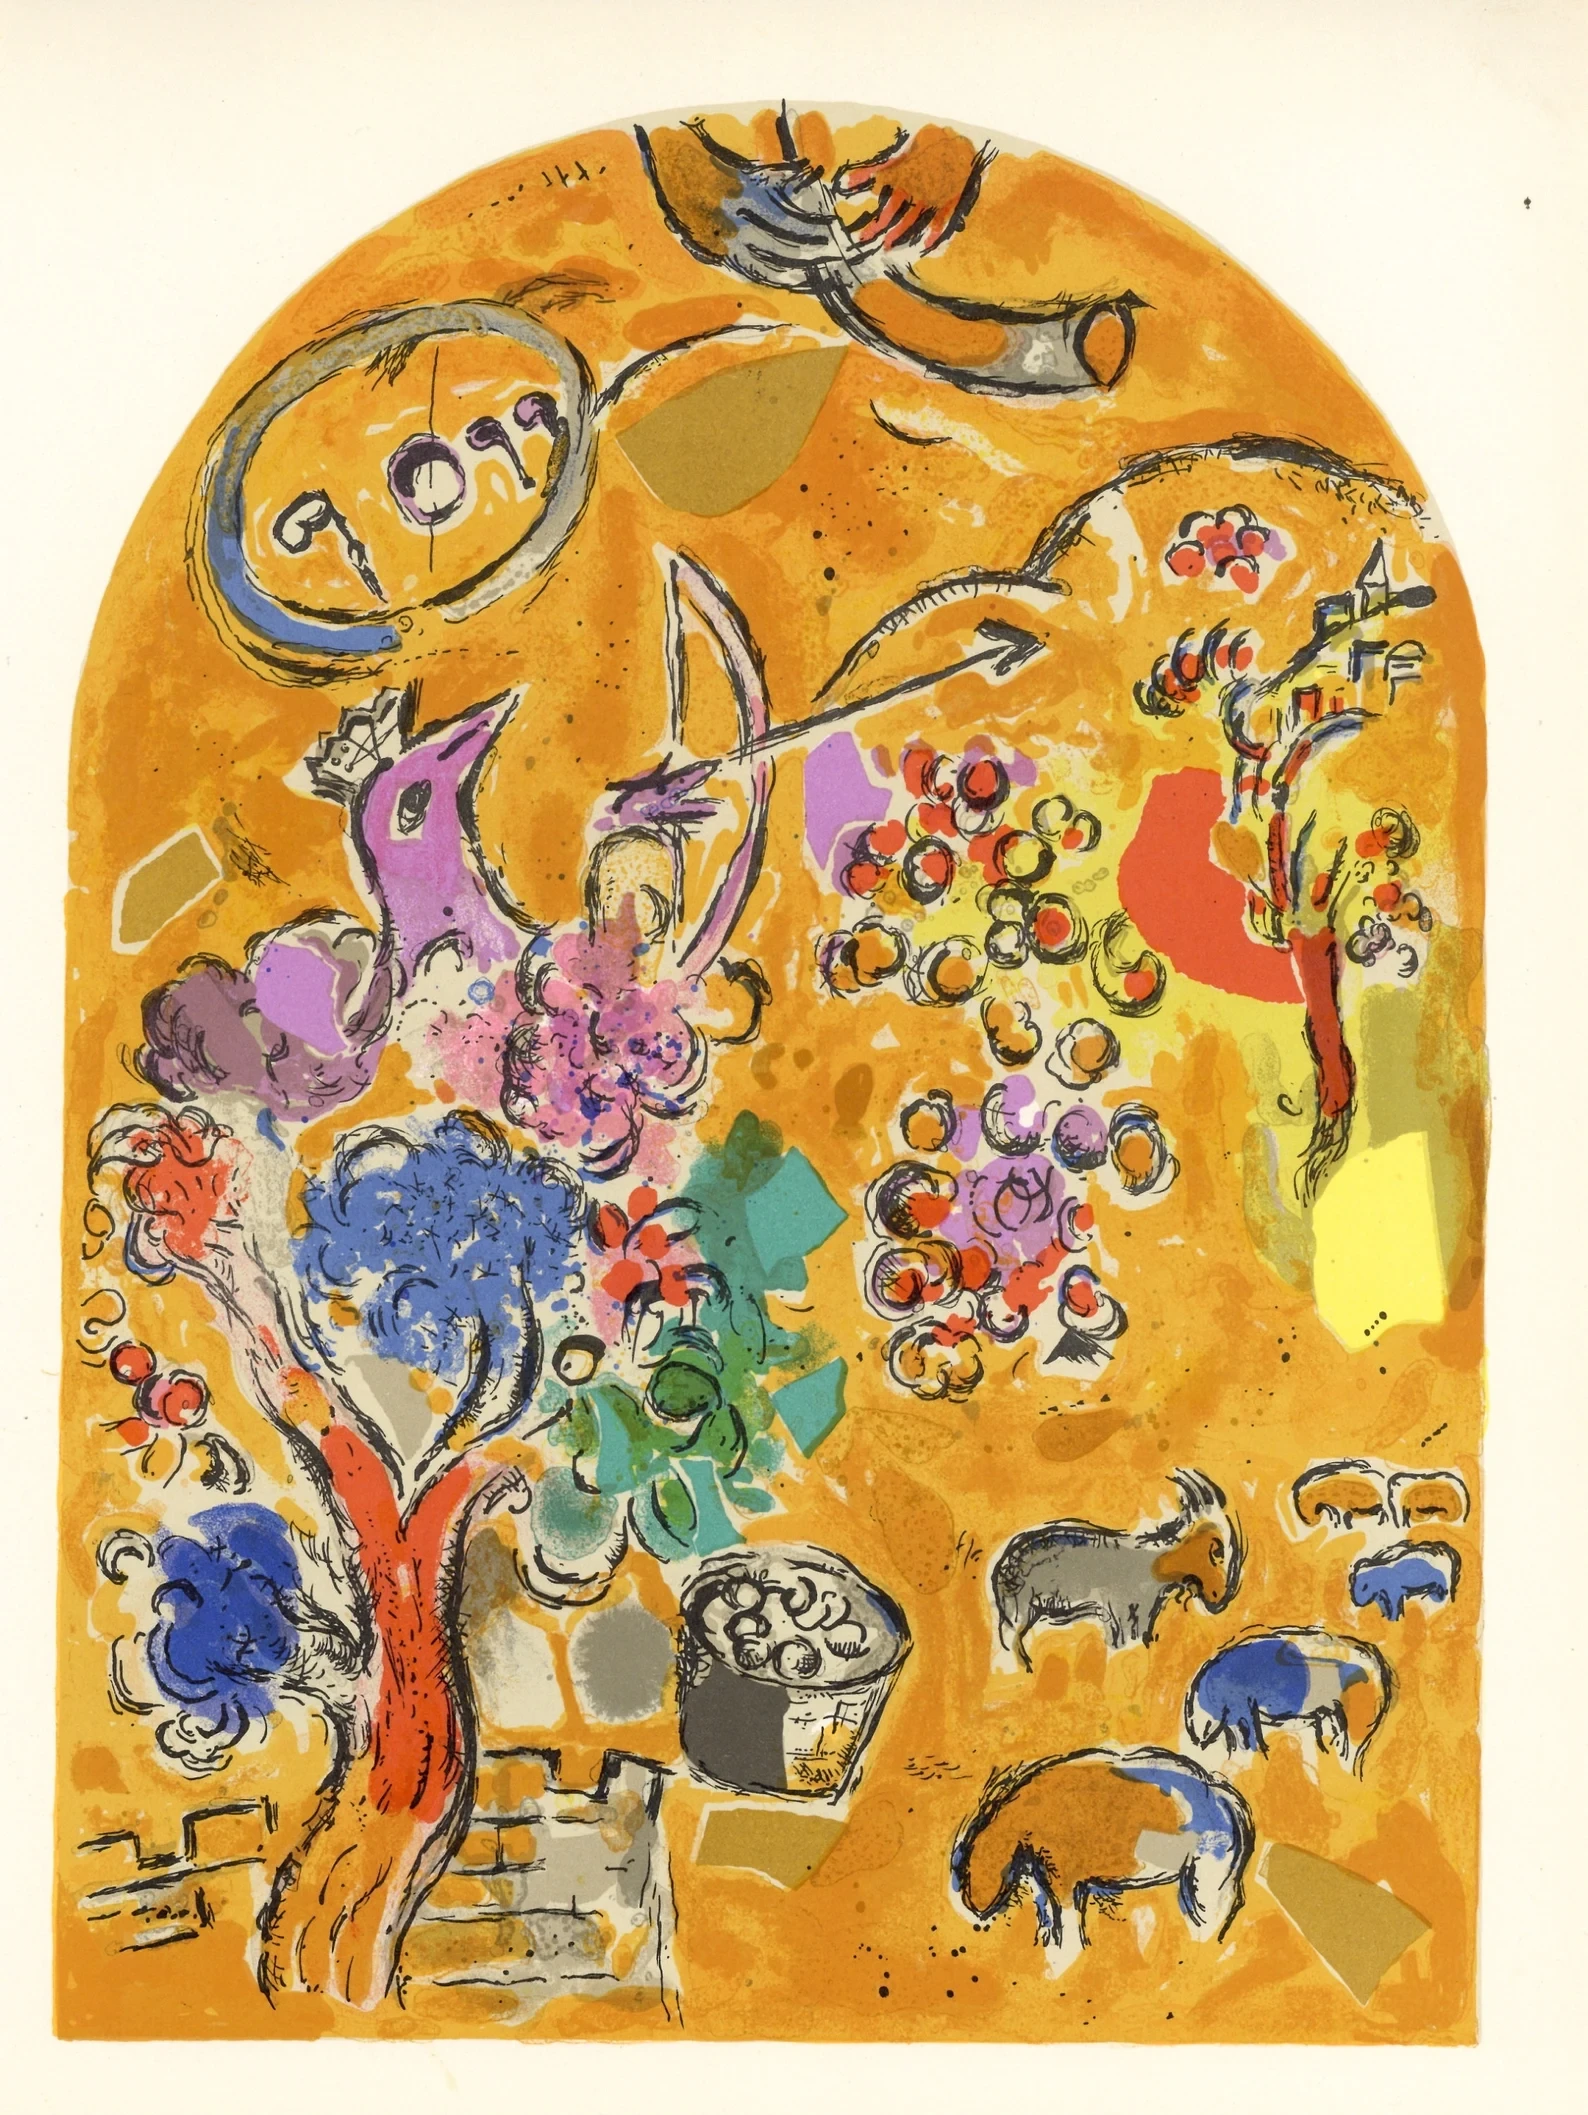 AFTV 2023 Cultural / PL Event: Chagall